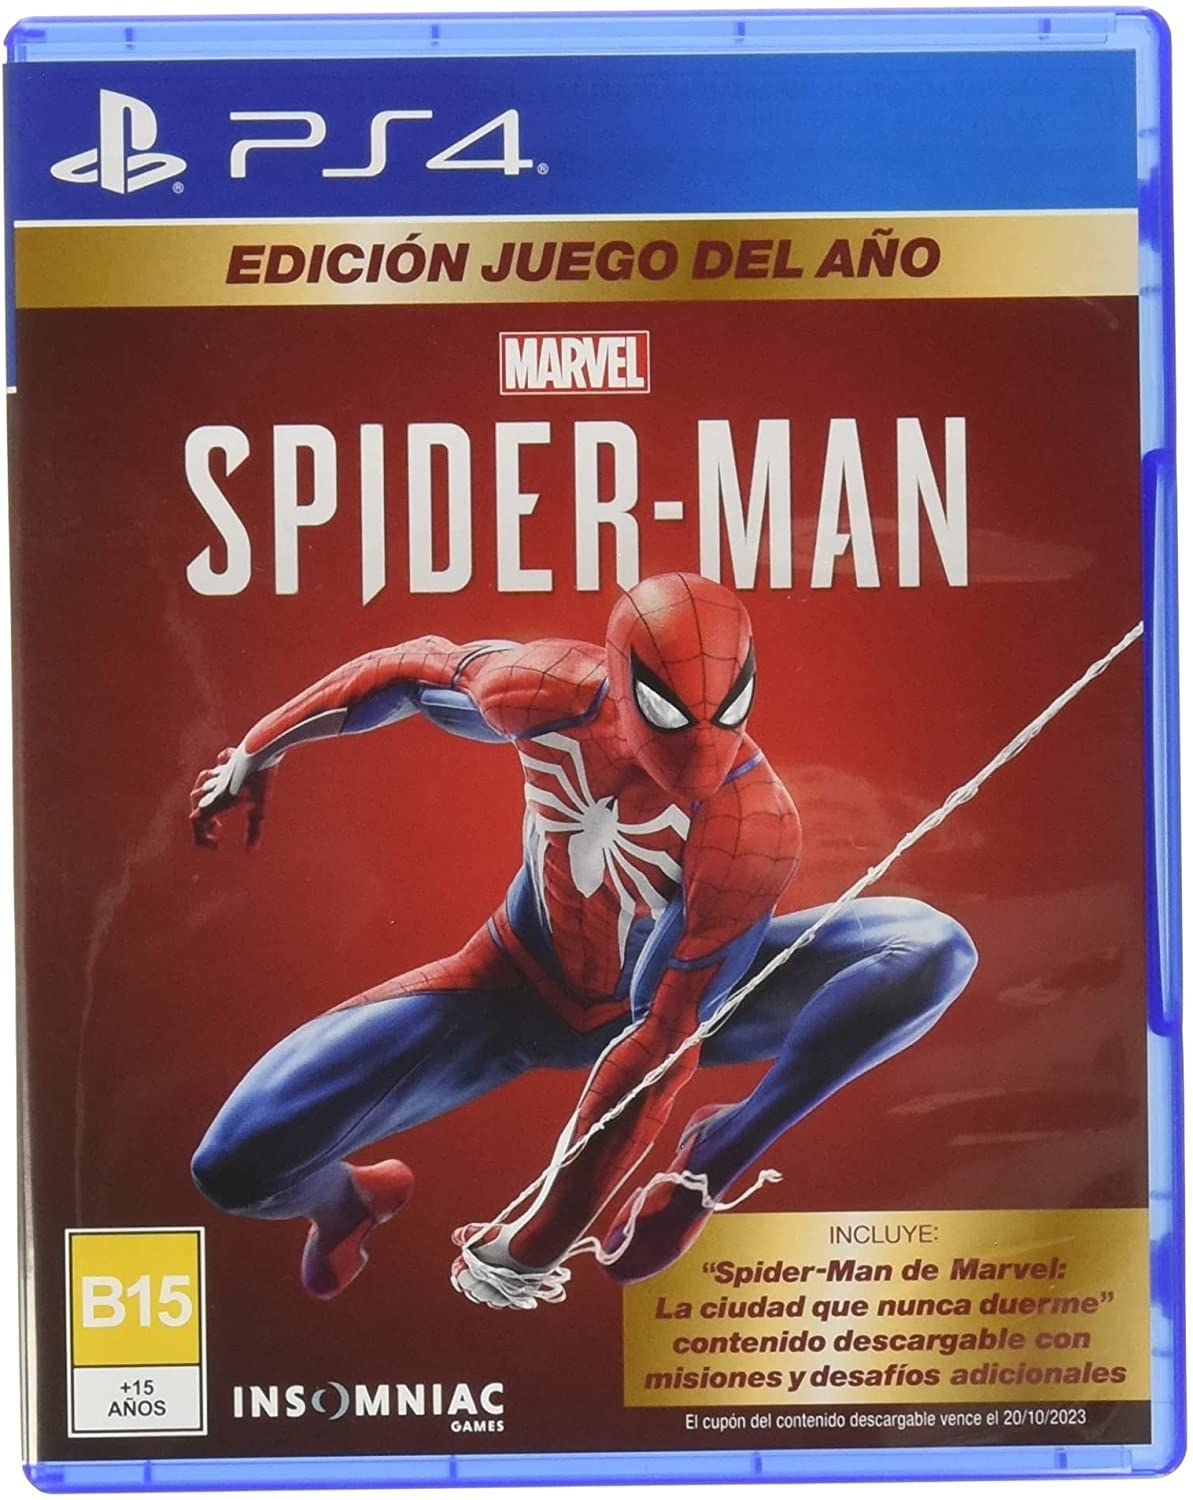 Spider-Man versión especial